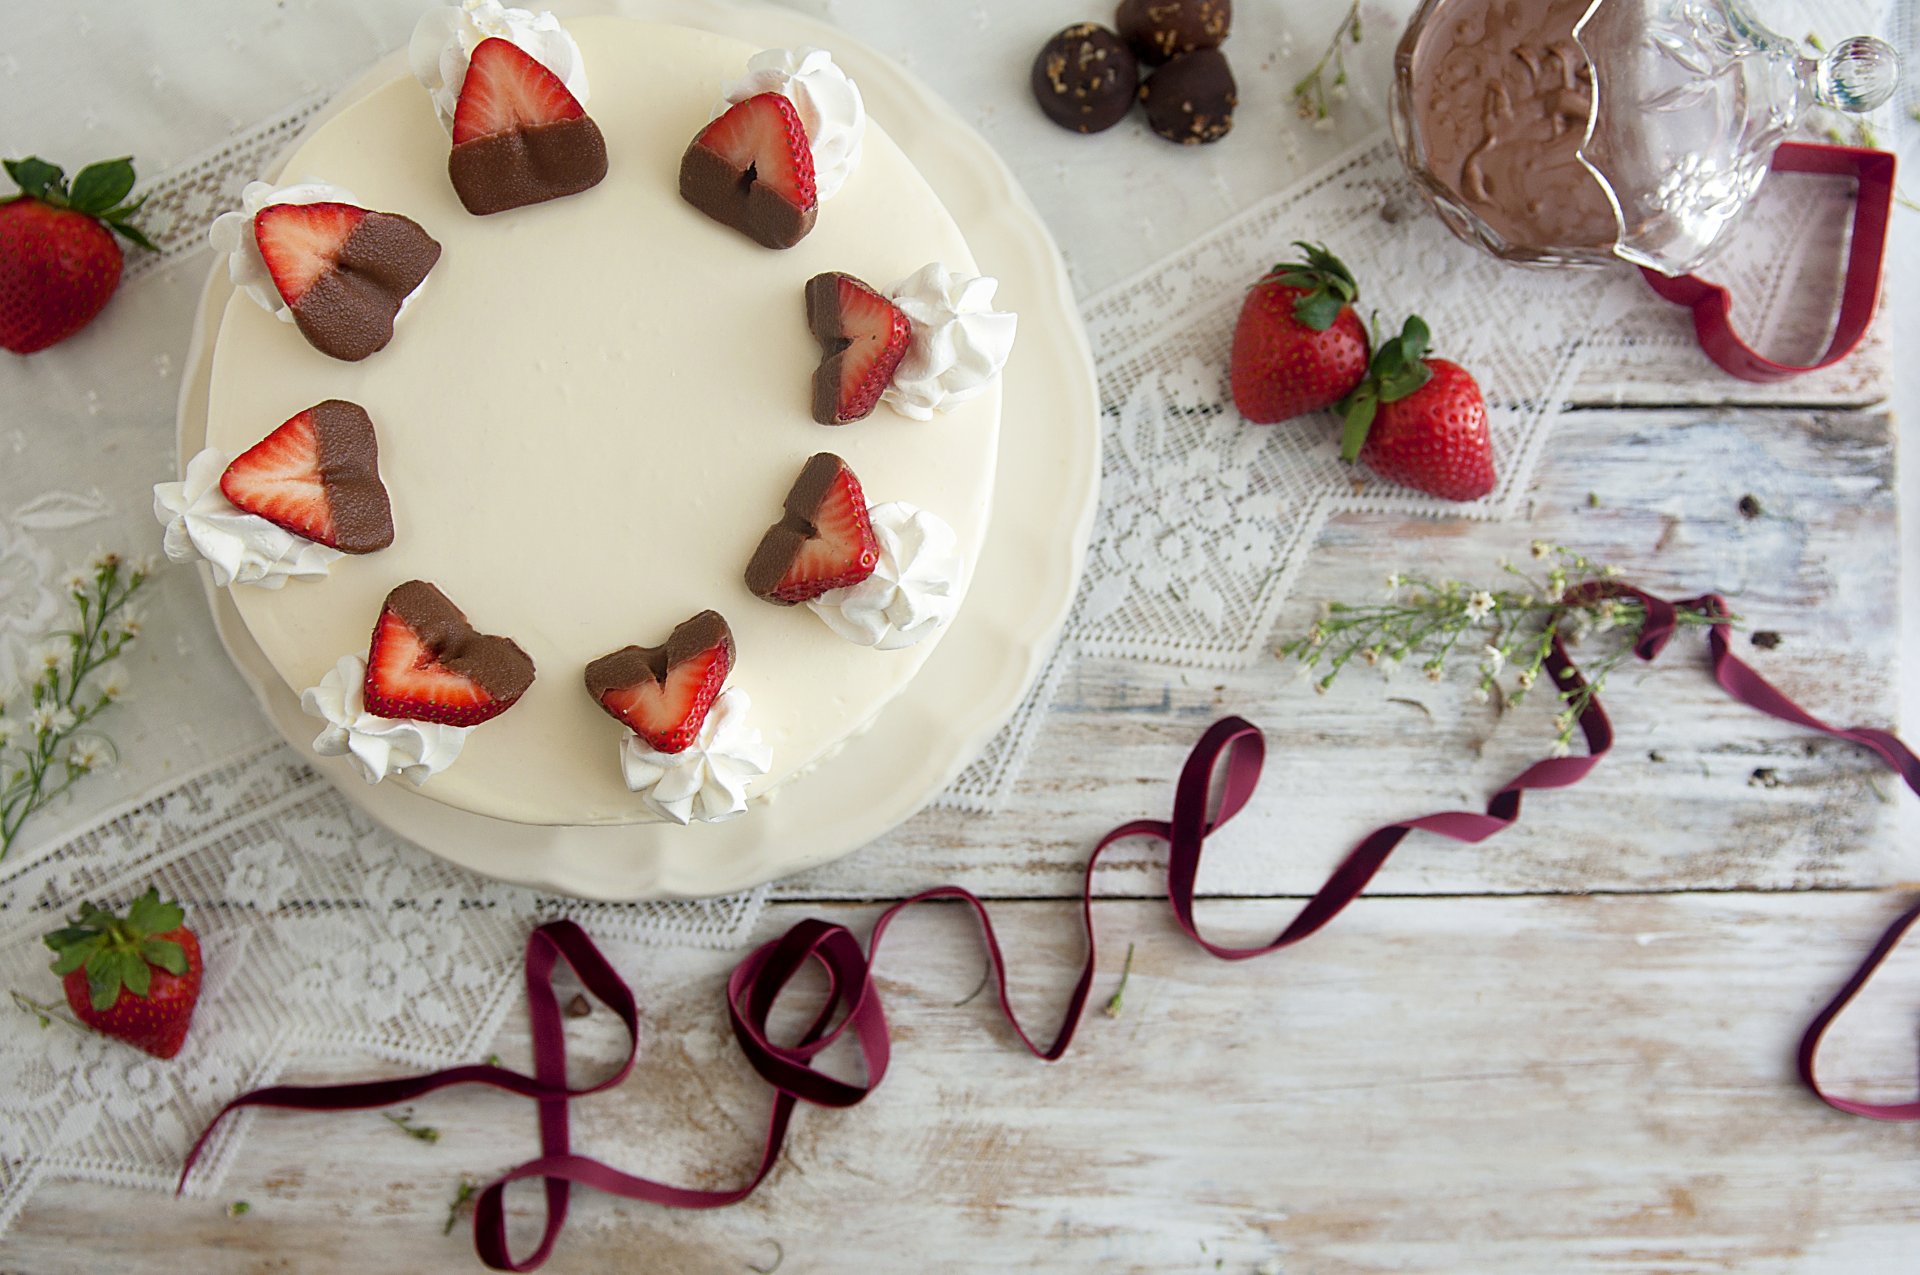 postre chocolate cinta vacaciones amor pastel pastel fresa bayas dulce comida comida tarta de queso crema mesa vacaciones